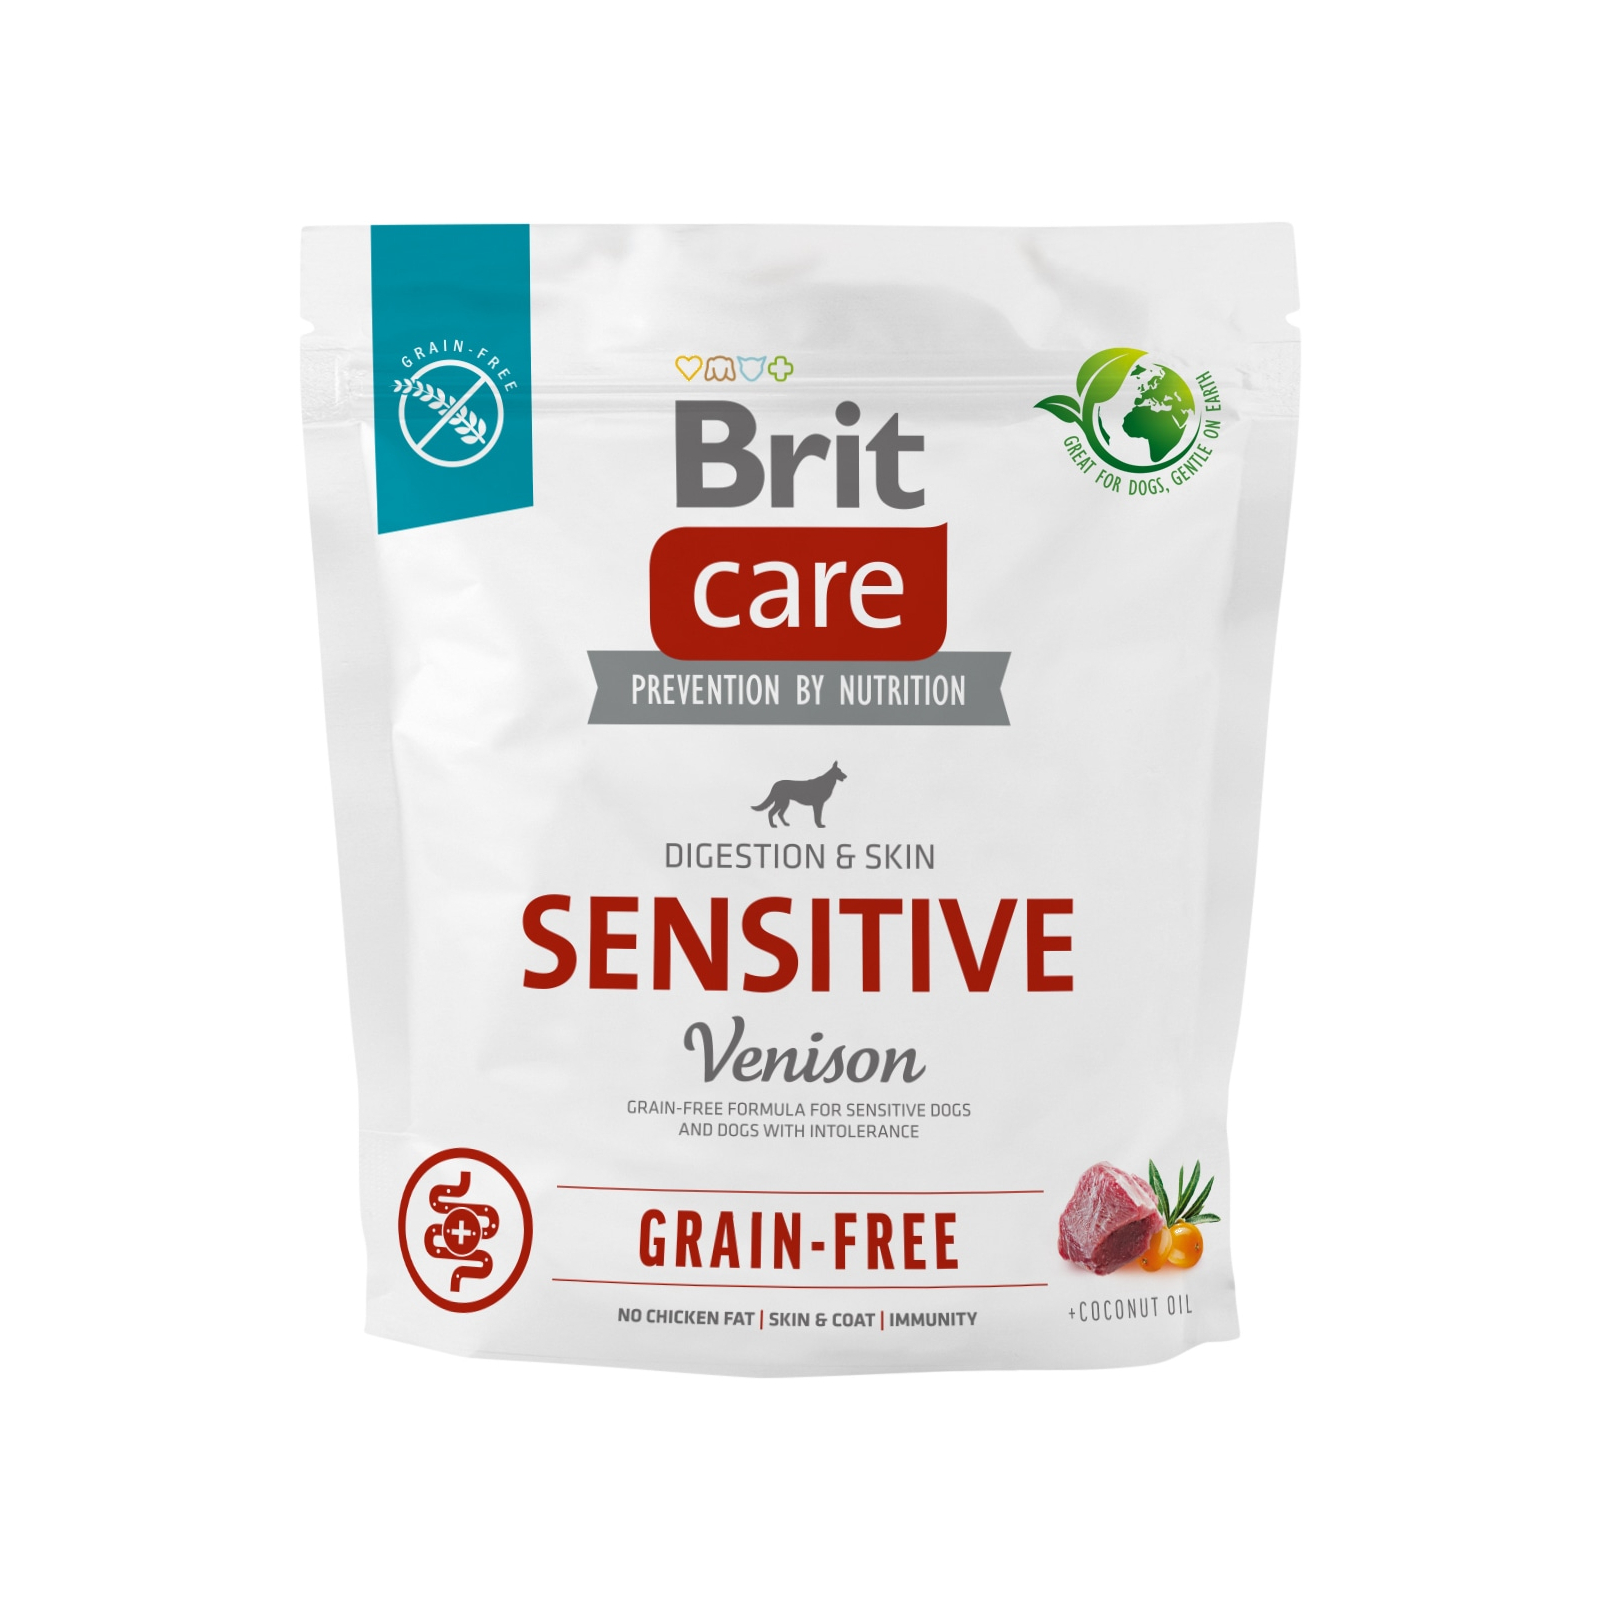 Сухой корм для собак Brit Care Dog Grain-free Sensitive беззерновой с олениной 3 кг (8595602559145)